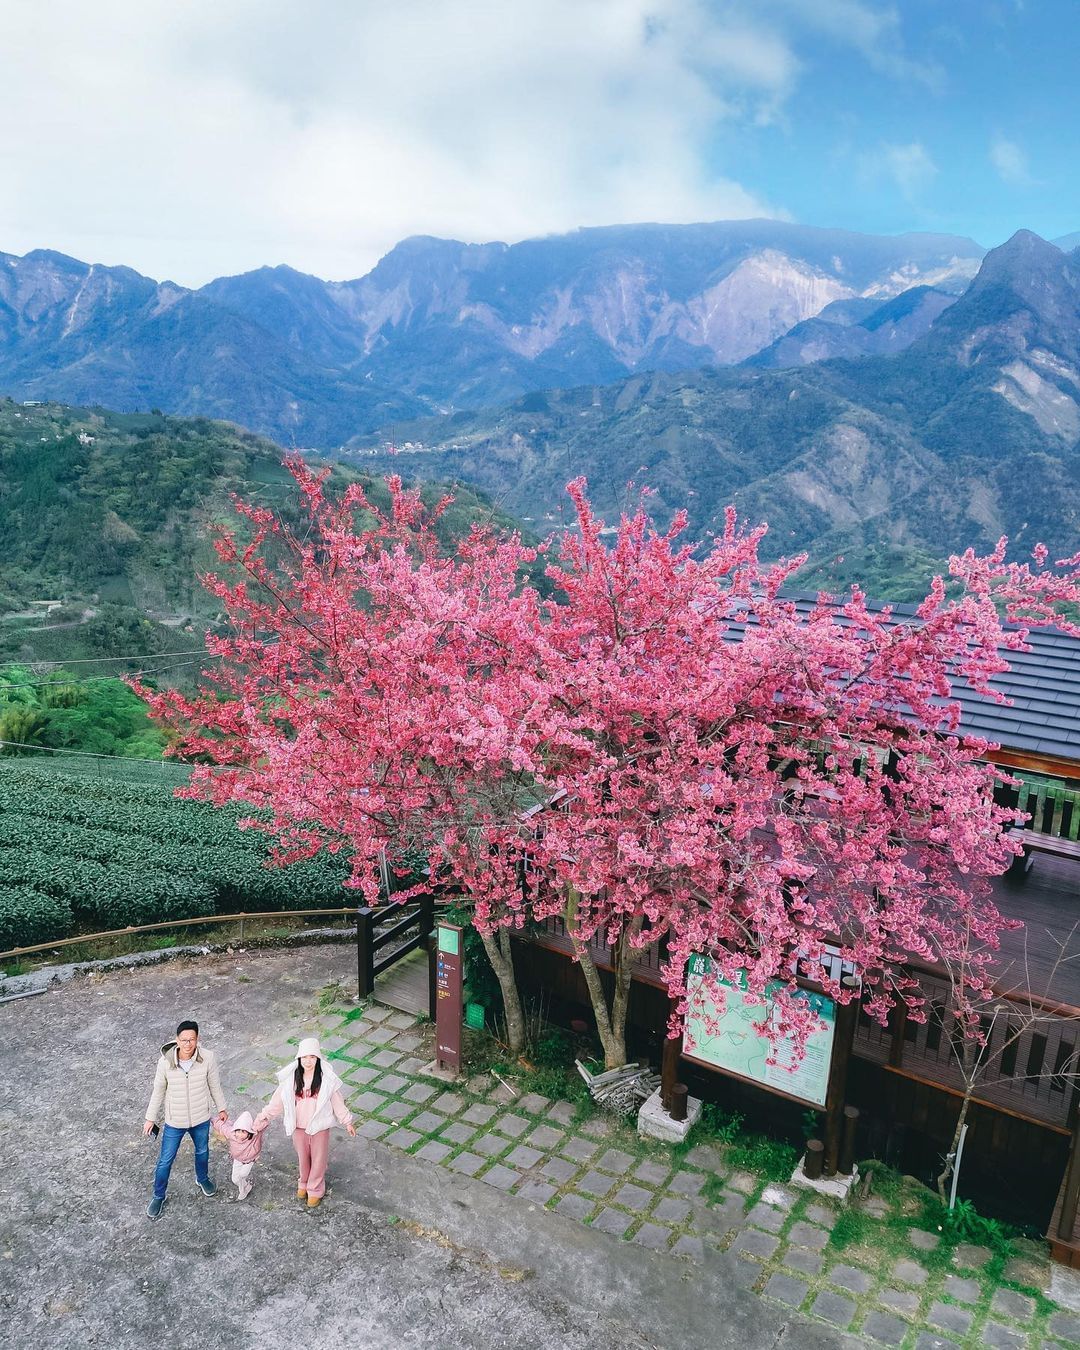 巃仔尾步道上一棵獨自美麗的櫻花樹，怎麼拍都美~或許能試試看與阿里山代表性的塔山同框呢！照片授權 @hsingfang20 -⠀歡迎...